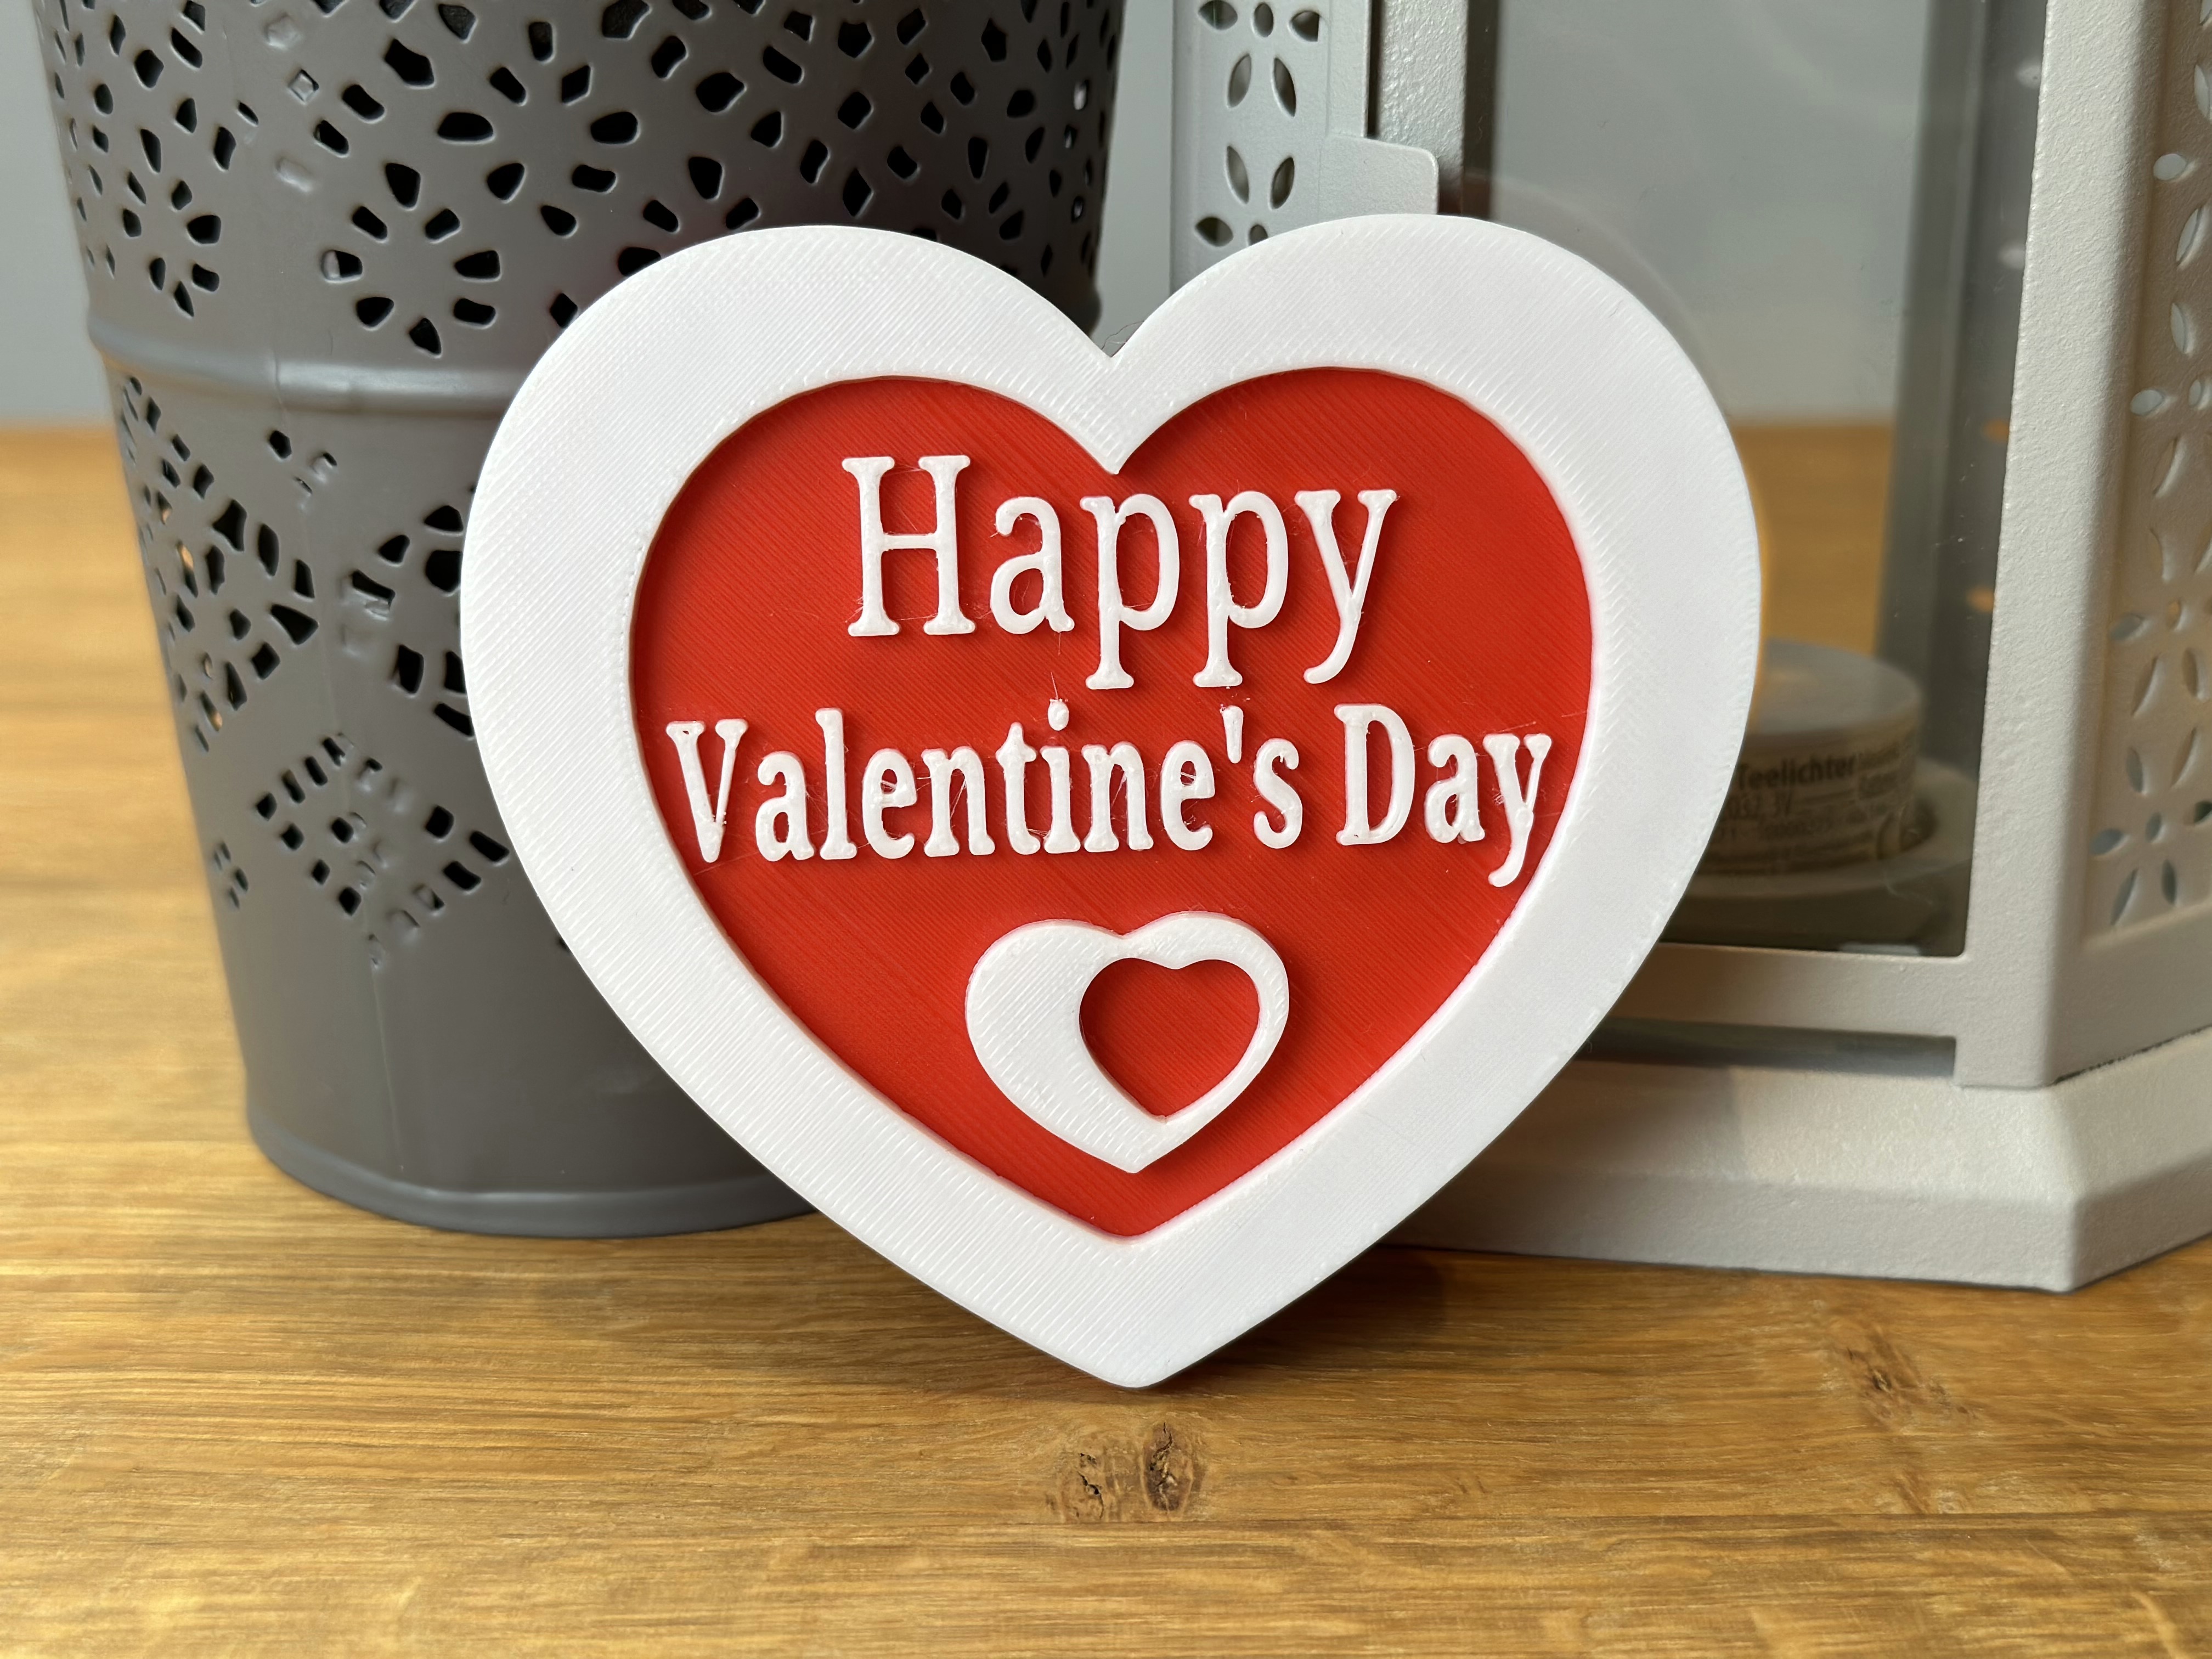 Happy Valentine's Day Herz in 2 Farben als Deko für ihr Zuhause oder als Geschenk für Freunde / Familie